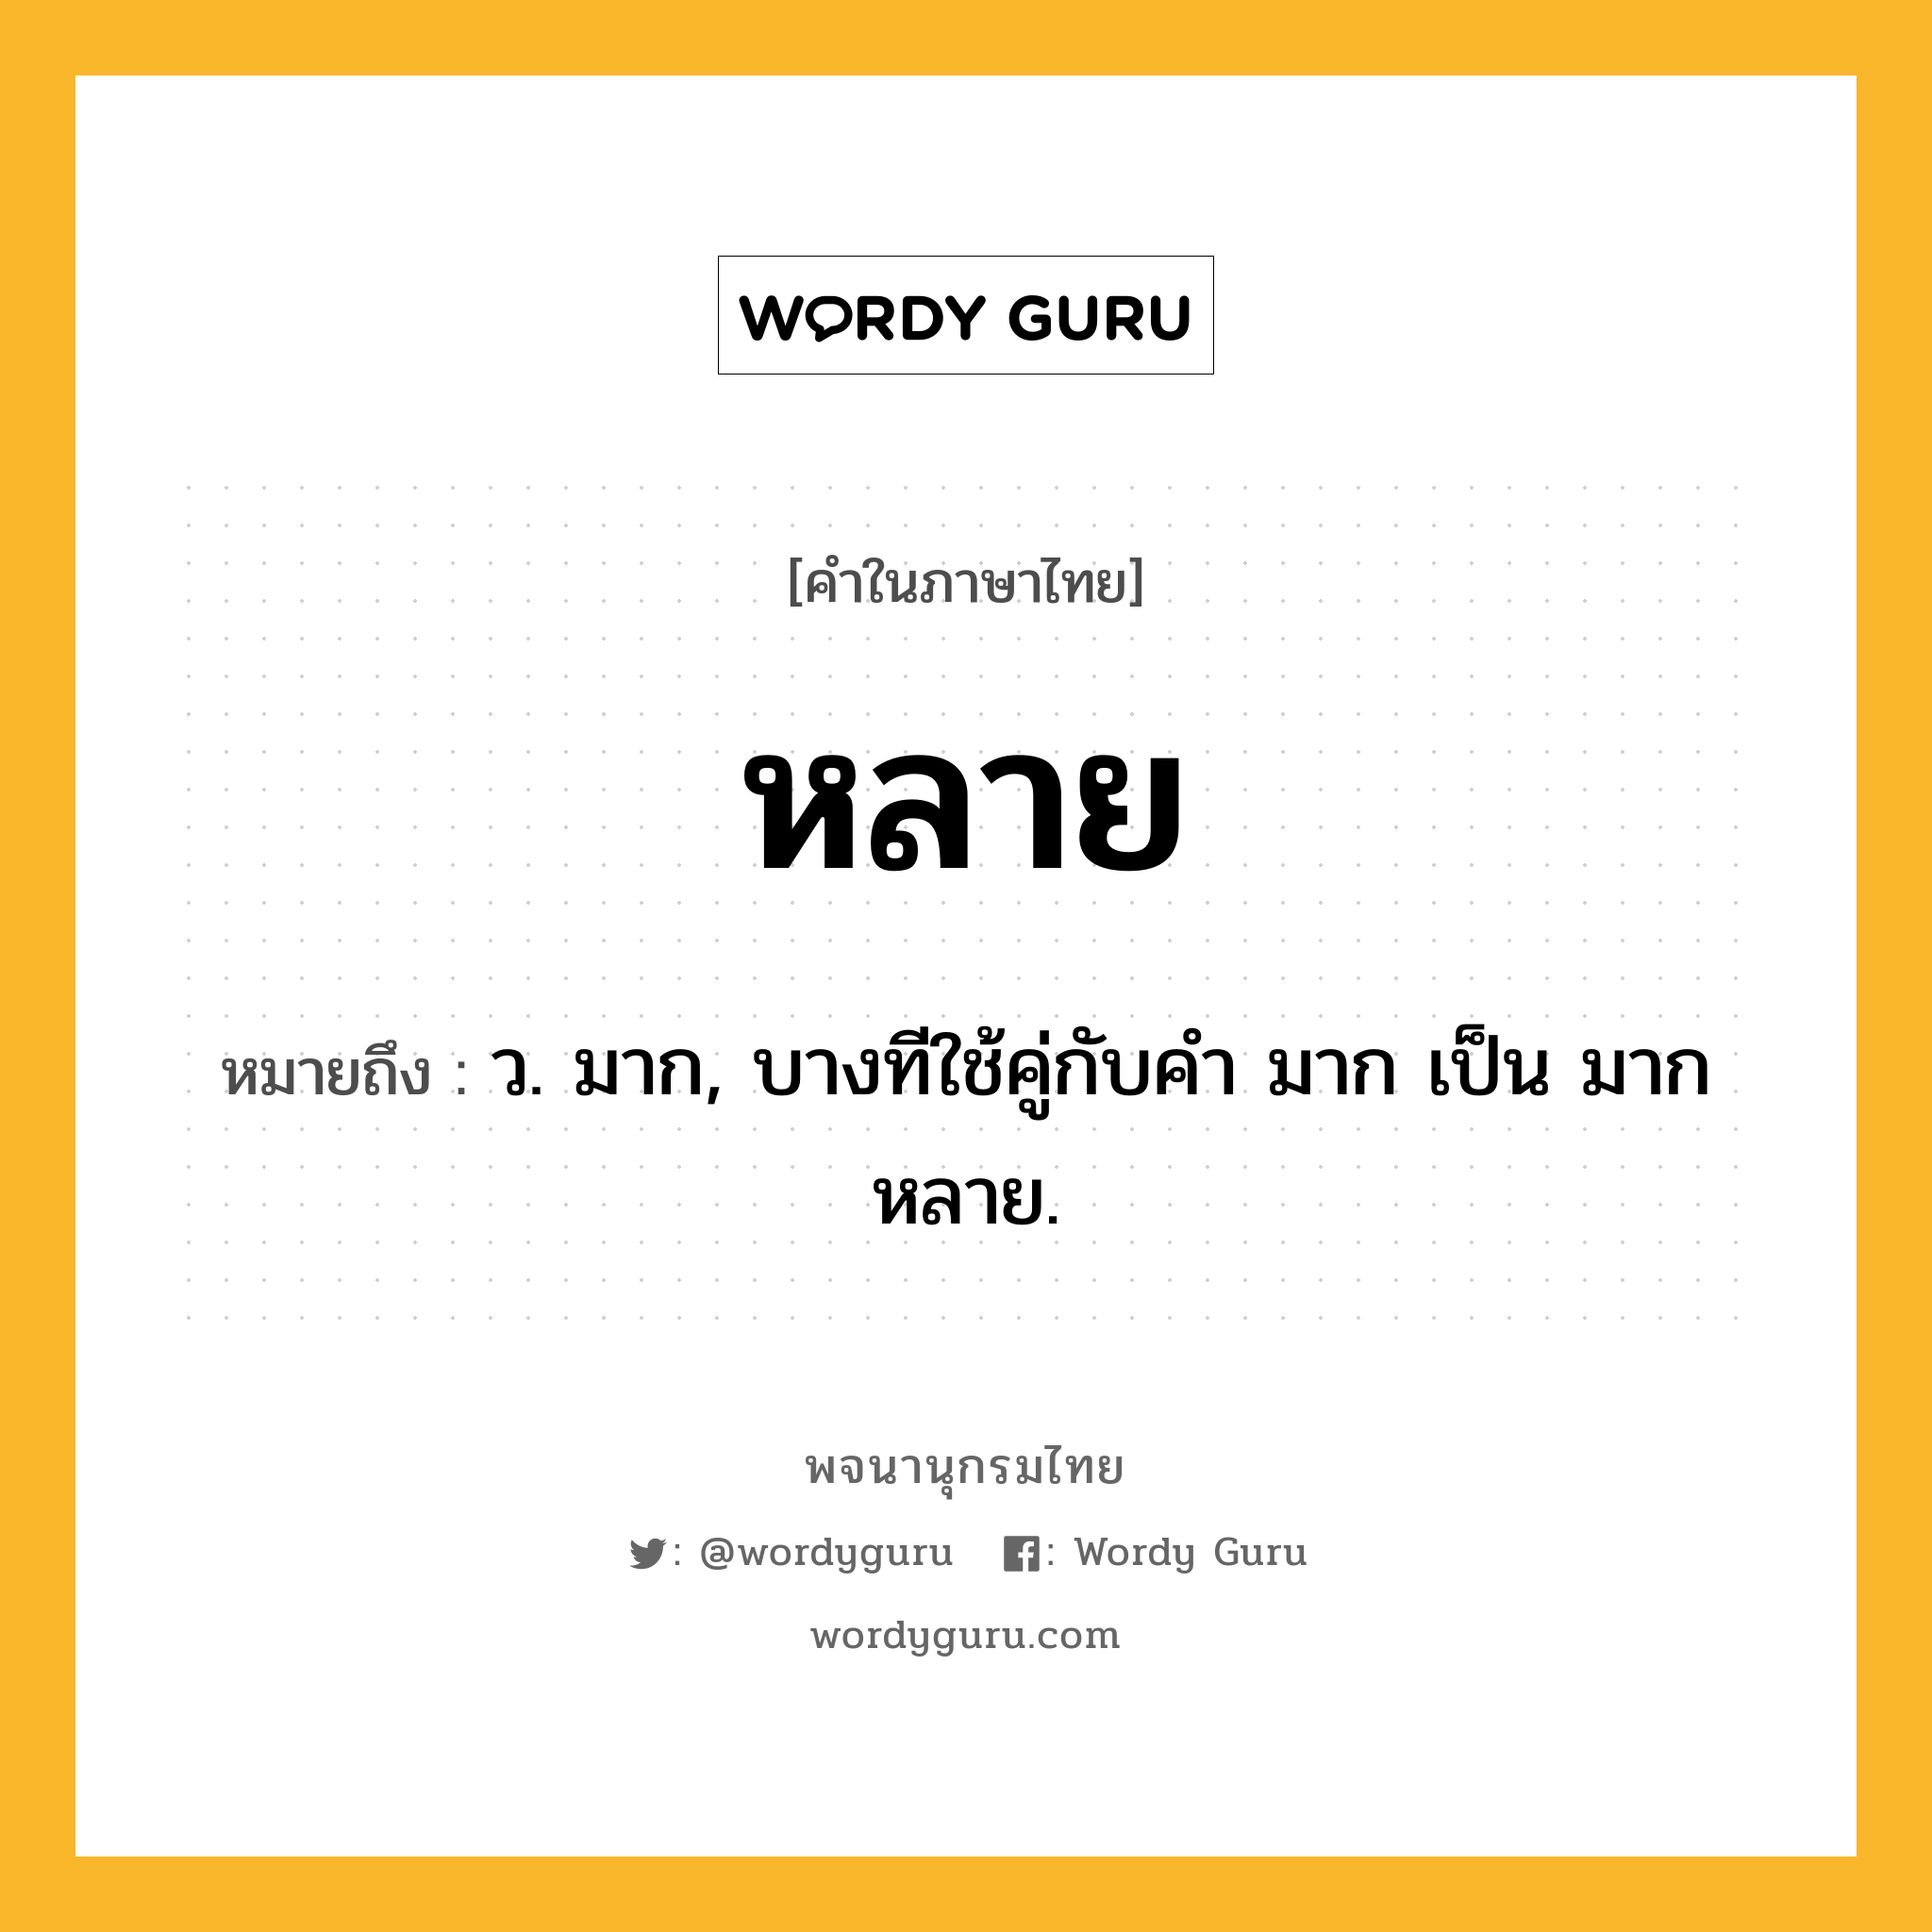 หลาย ความหมาย หมายถึงอะไร?, คำในภาษาไทย หลาย หมายถึง ว. มาก, บางทีใช้คู่กับคำ มาก เป็น มากหลาย.